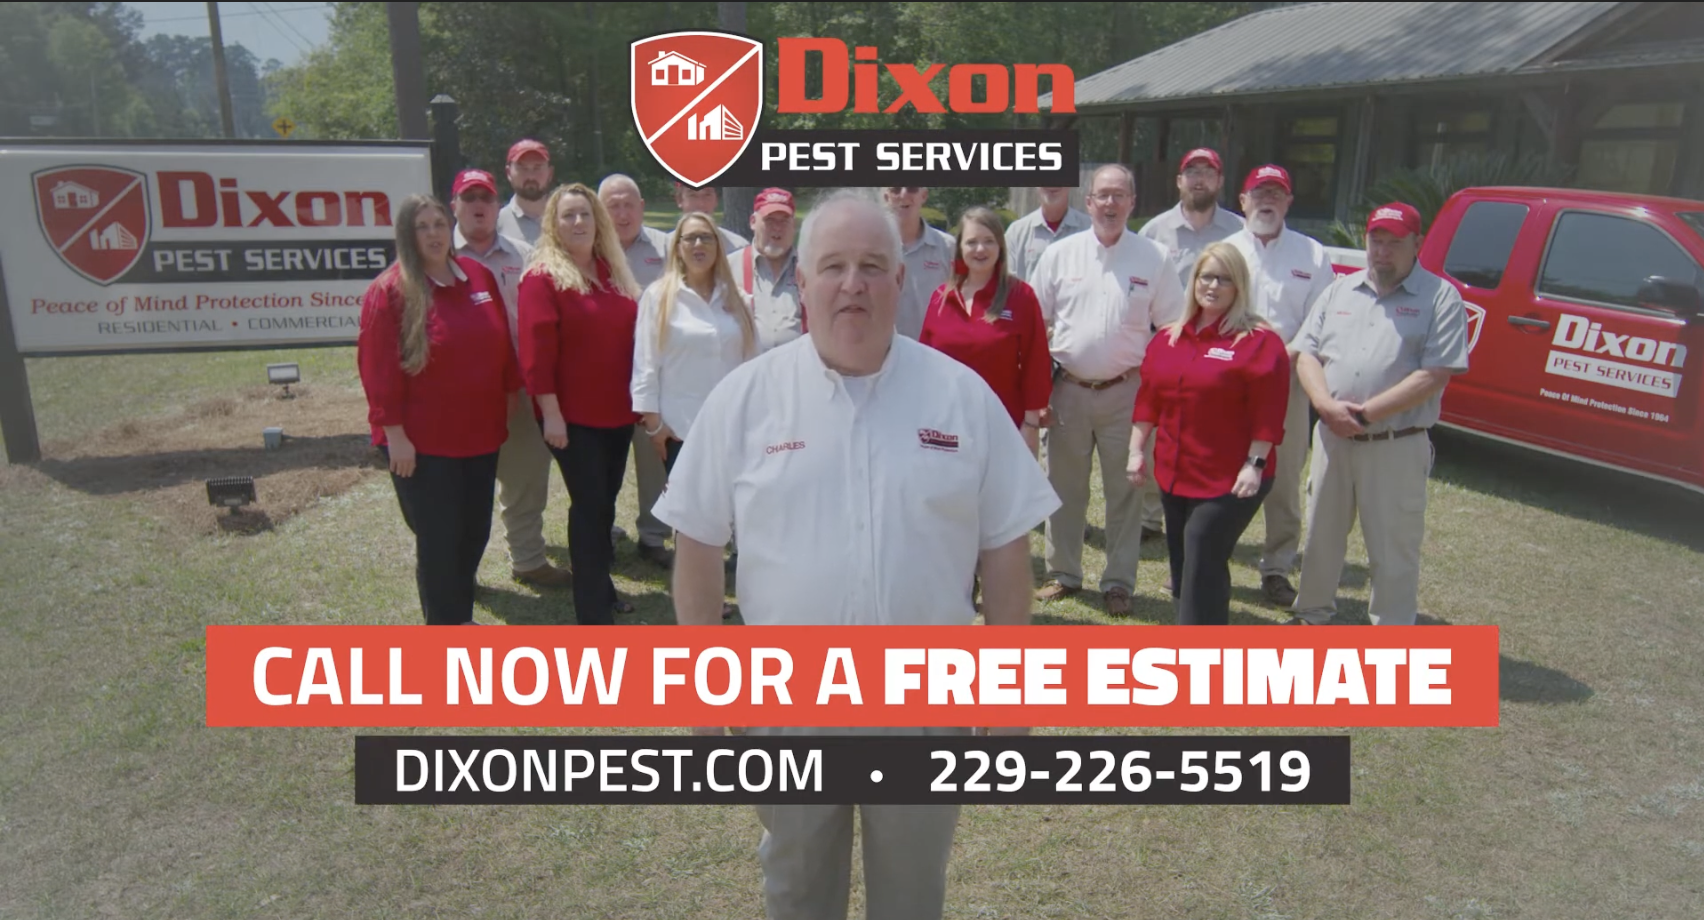 Dixon Pest Services